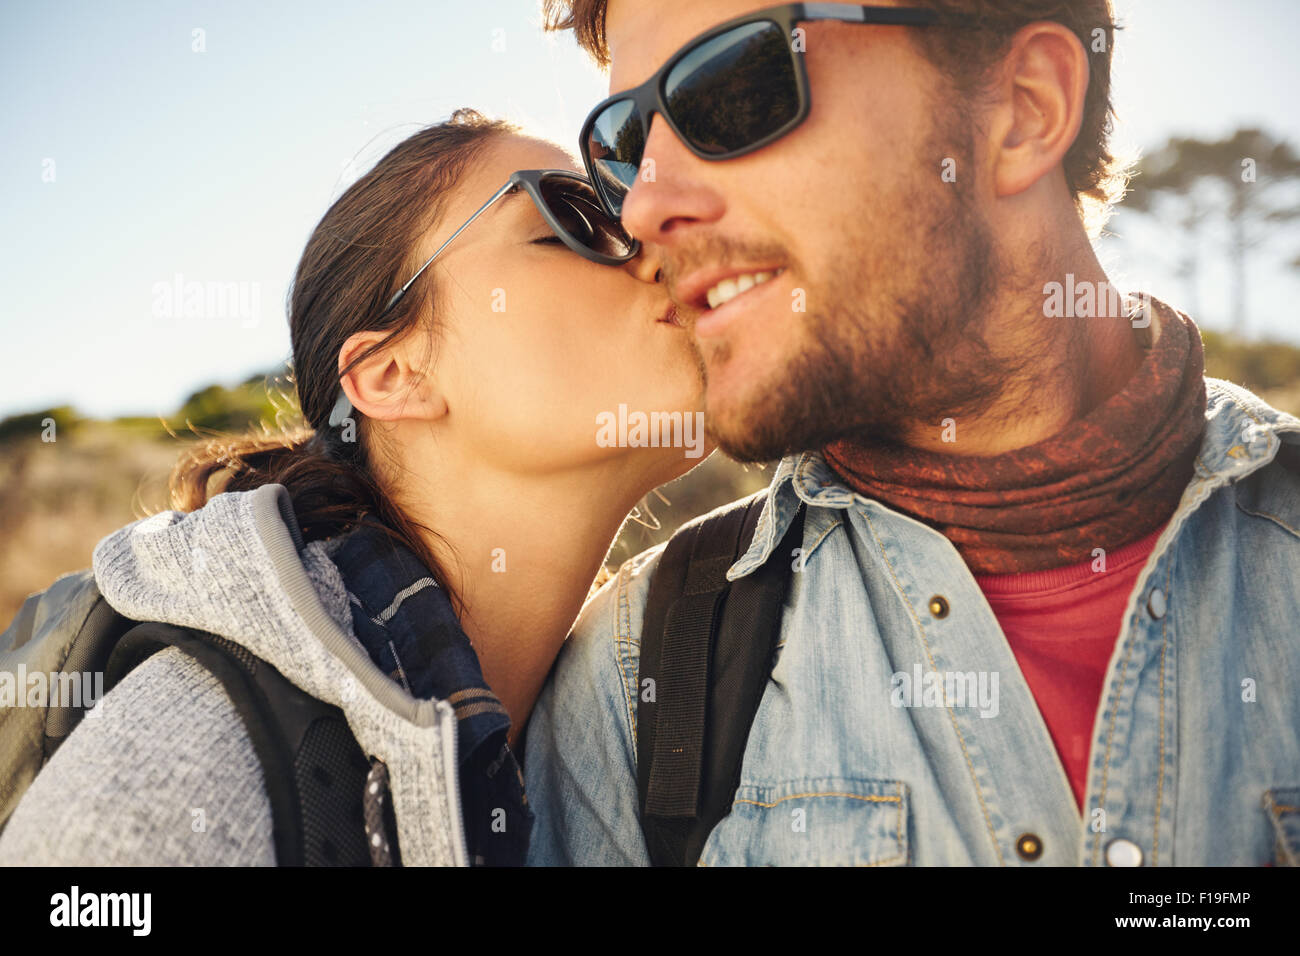 Jeune couple aimant touristique de randonnée. Jeune femme embrassant la joue de son petit ami, à l'extérieur sur une randonnée. Banque D'Images